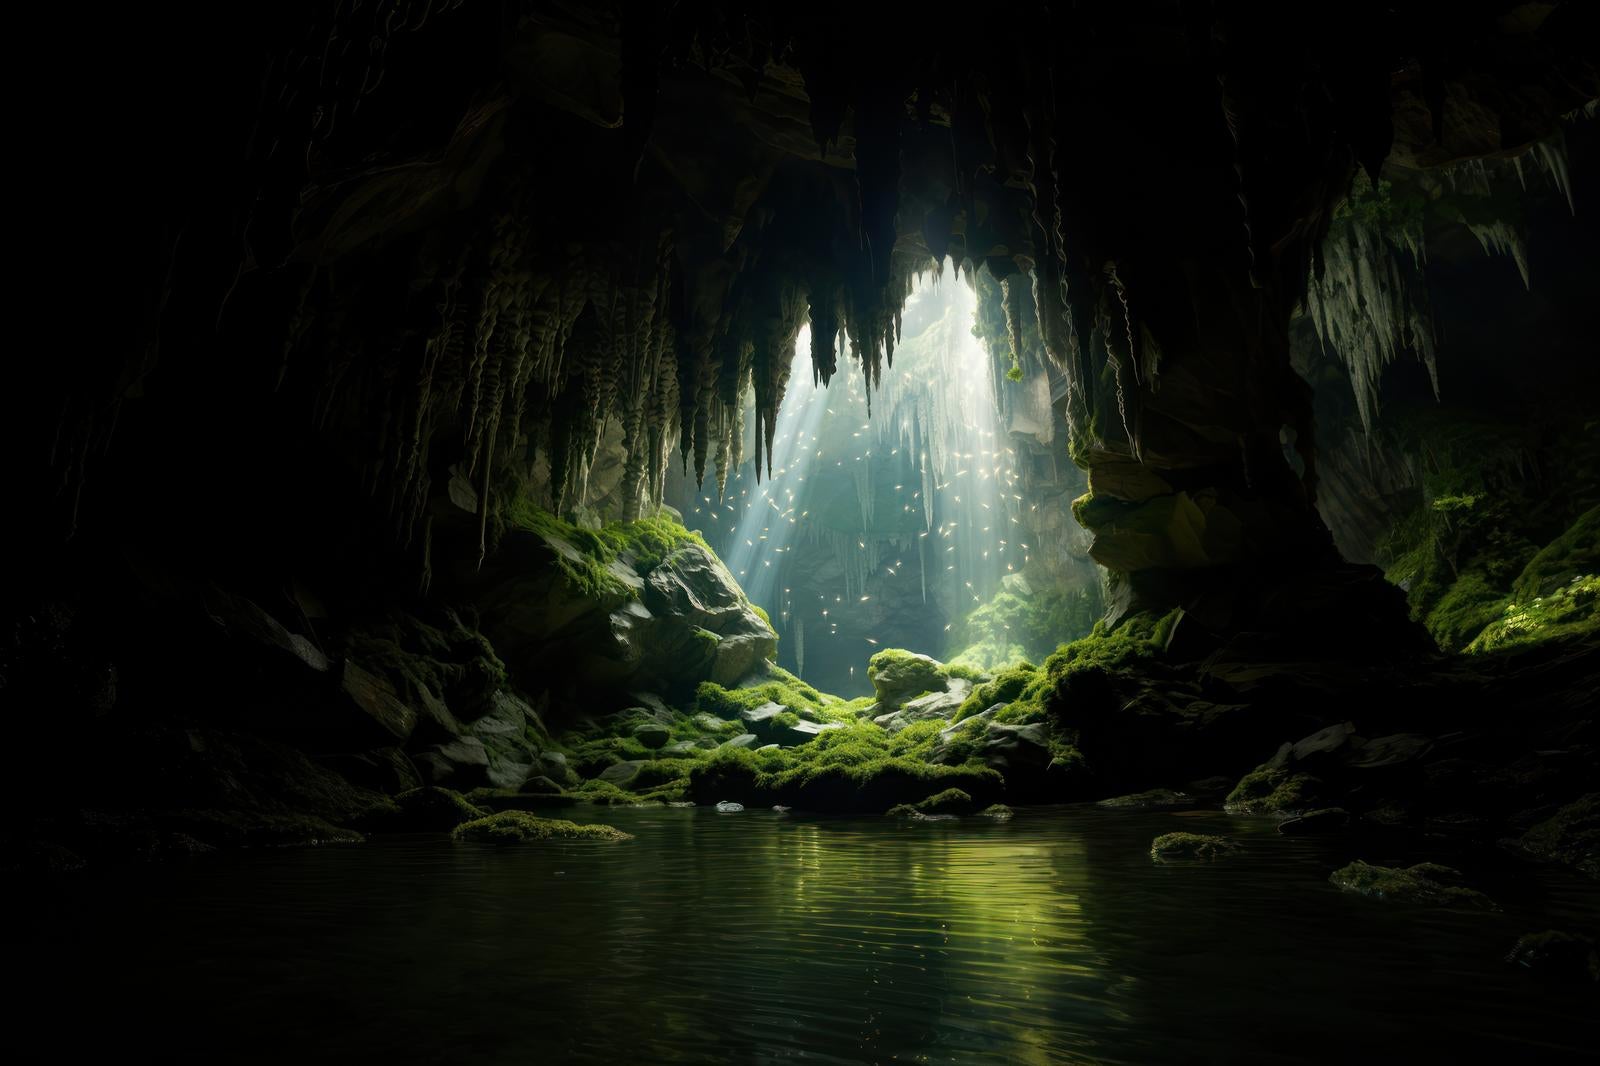 「鍾乳洞の光芒 洞窟と水源が織りなす光と影の物語」の写真